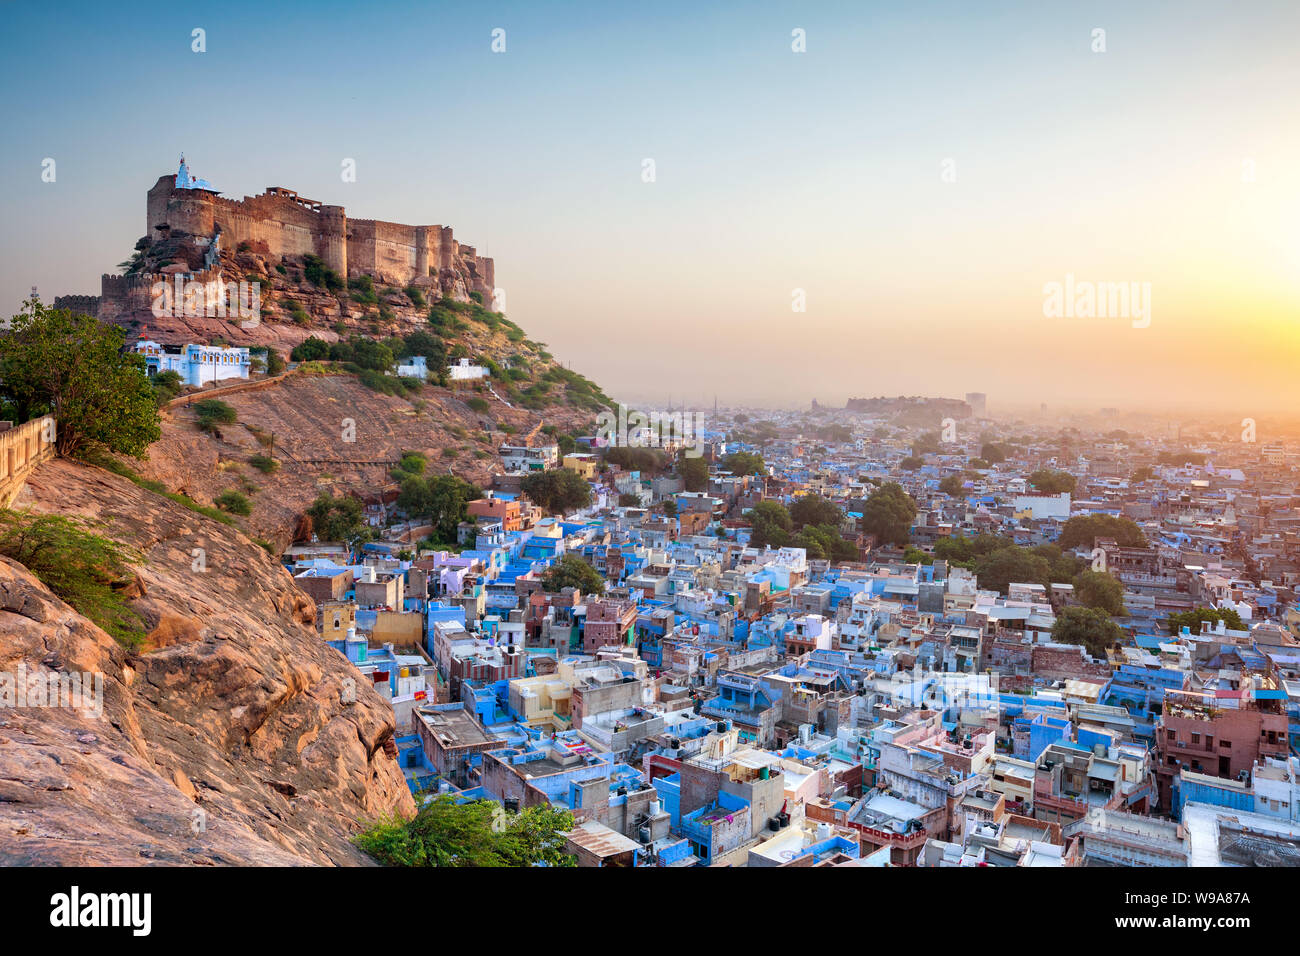 La ciudad azul y la fortaleza de Mehrangarh de Jodhpur. Rajasthan, India Foto de stock